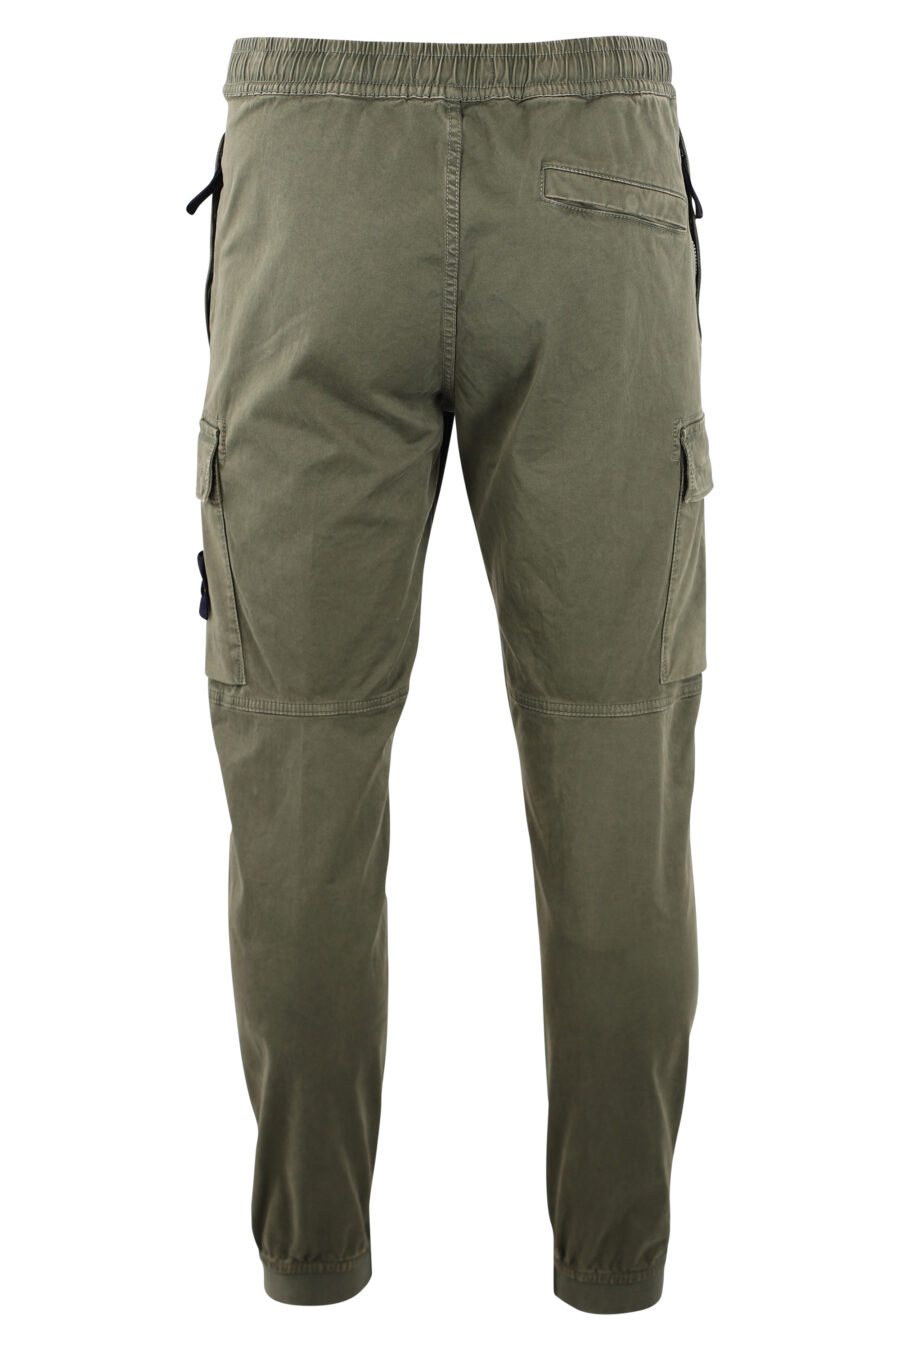 Pantalón verde militar estilo cargo con parche lateral - IMG 3199